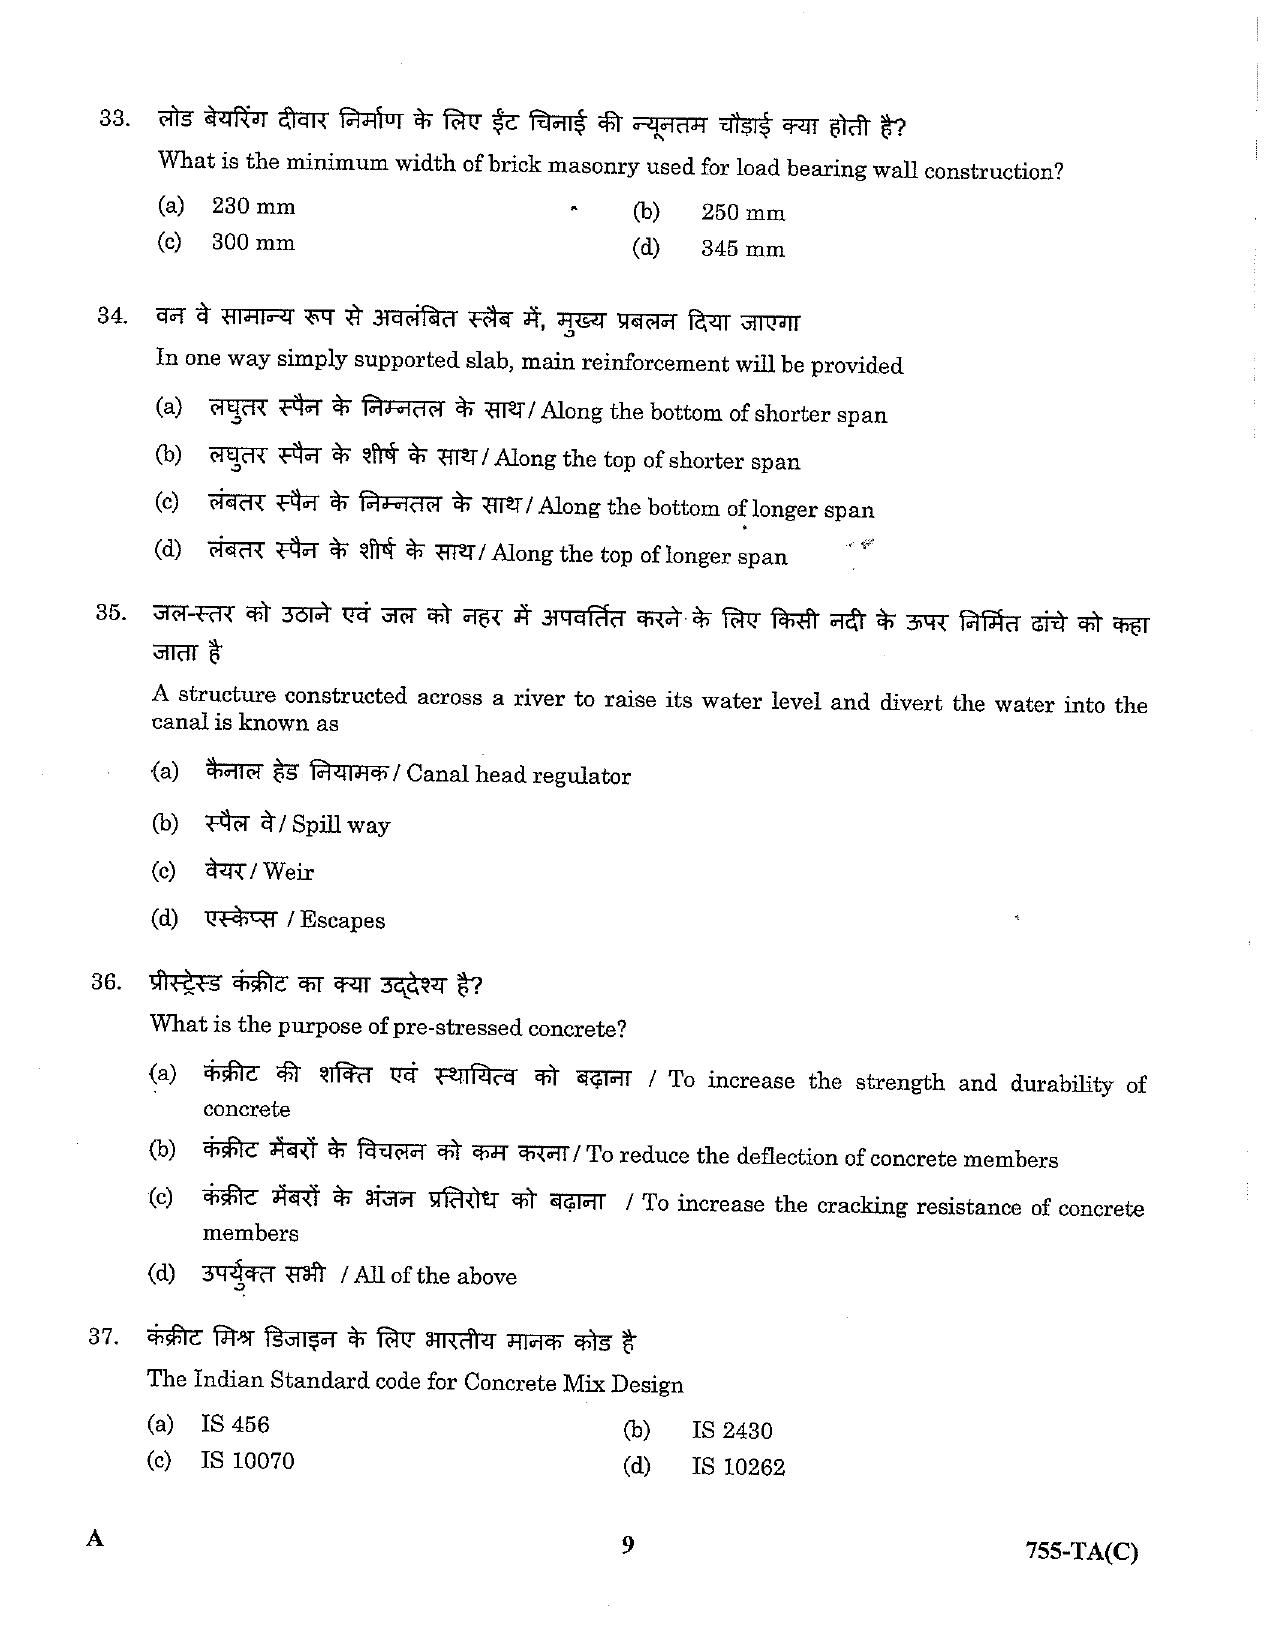 LPSC Technical Assistant (Civil) 2023 Question Paper - Page 9